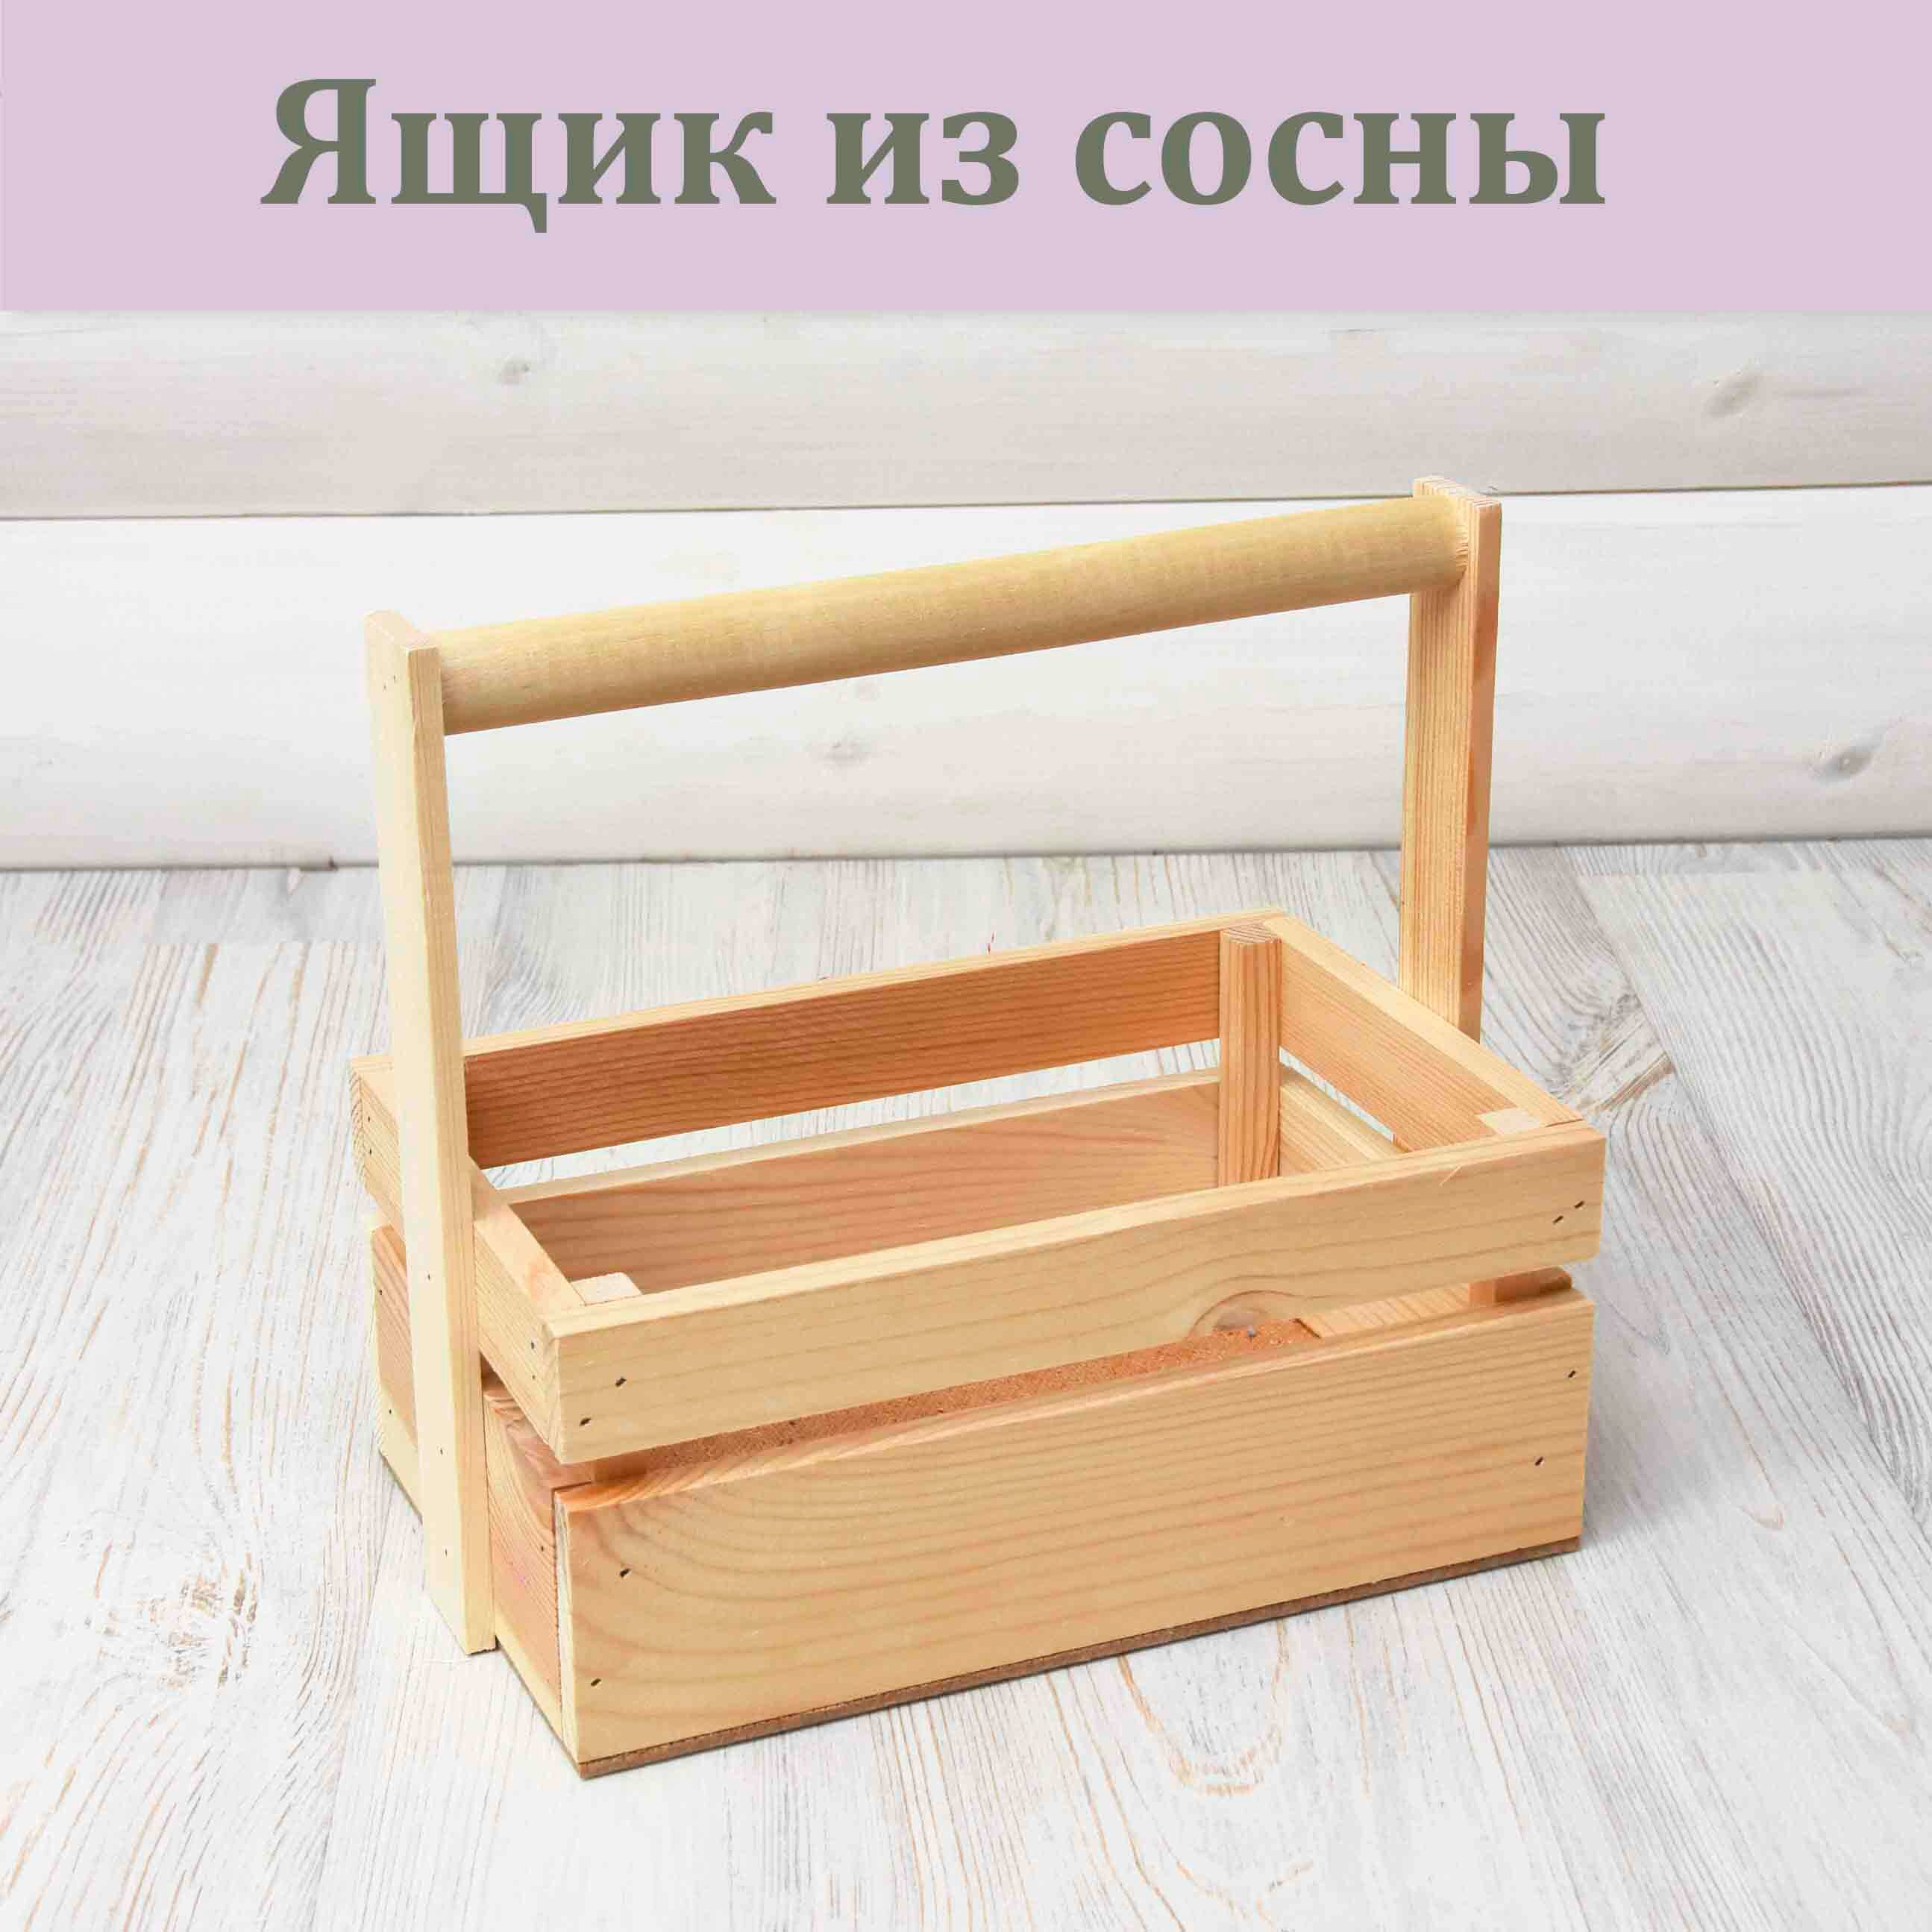 Ящик из сосны 25 х 16 х 10(23) см./ Упаковка для подарка / Кашпо ящик реечный